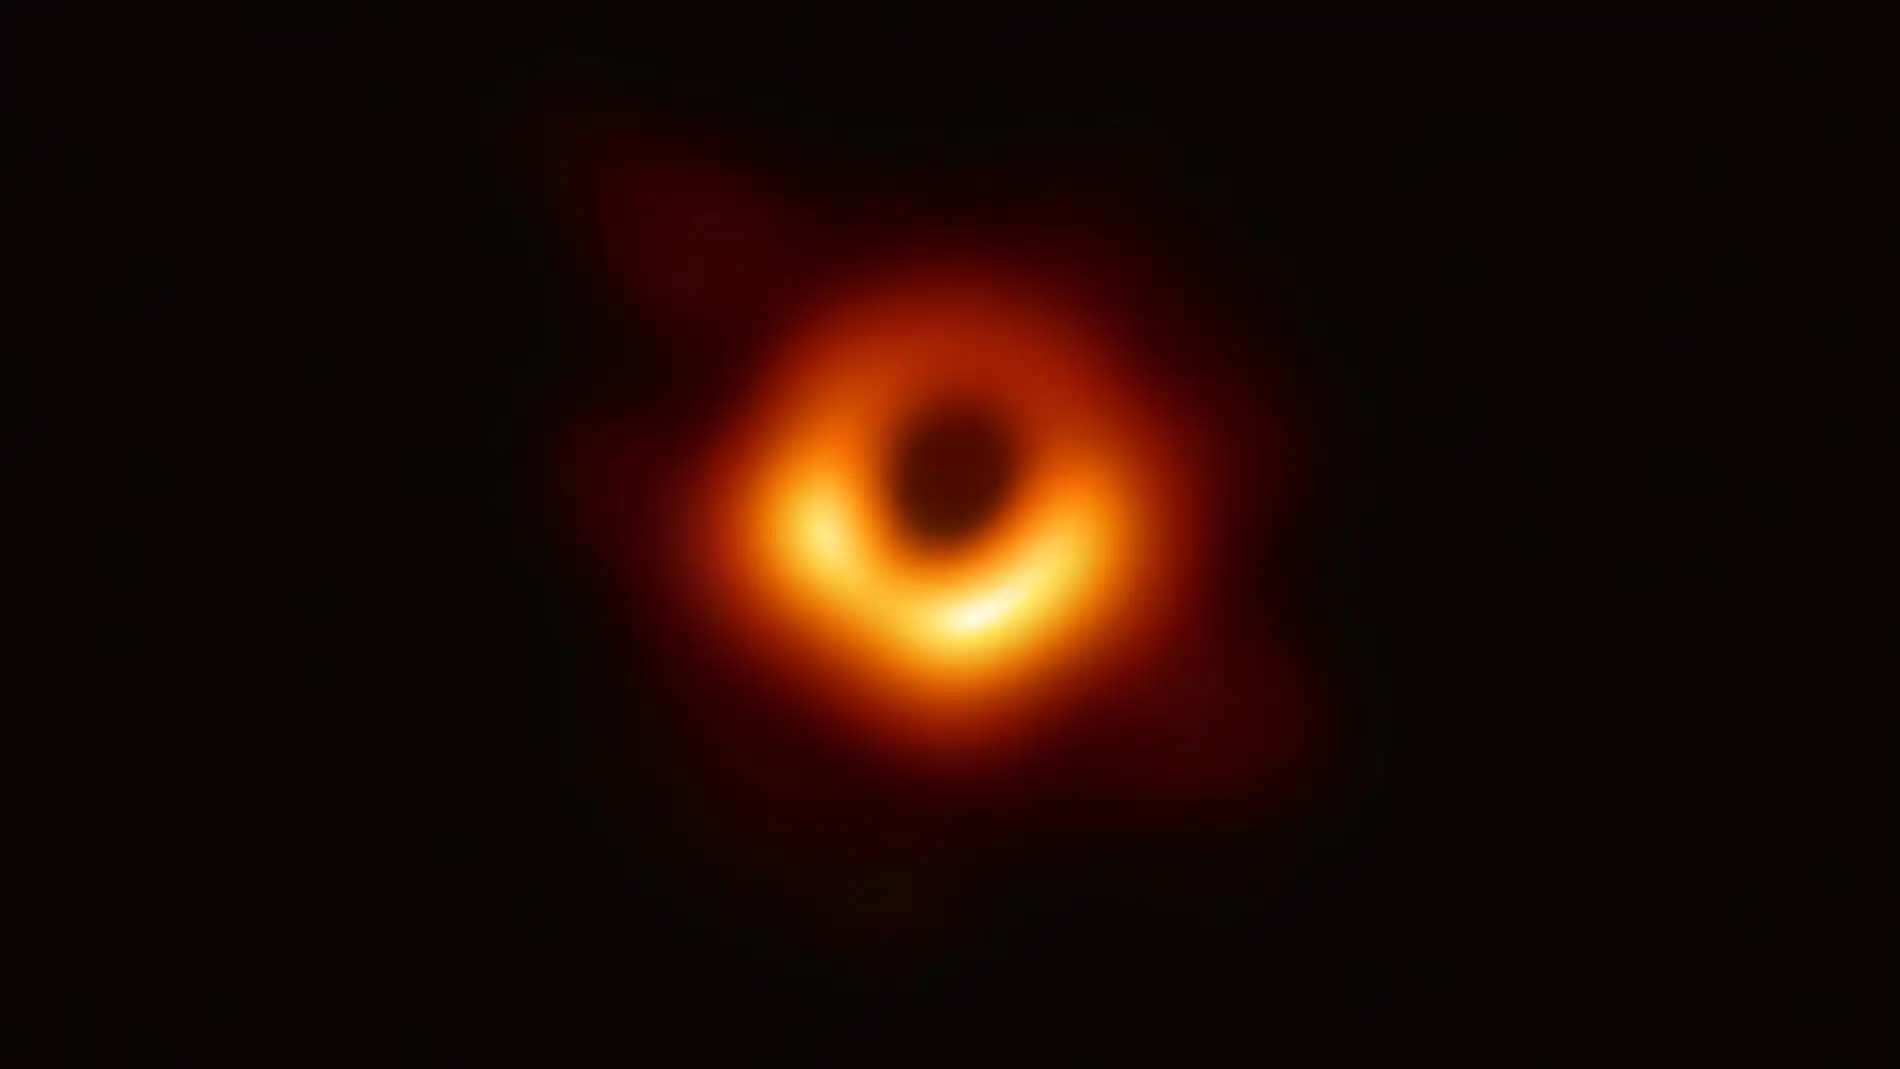 Imagen del agujero negro captado por el EHT en 2019 